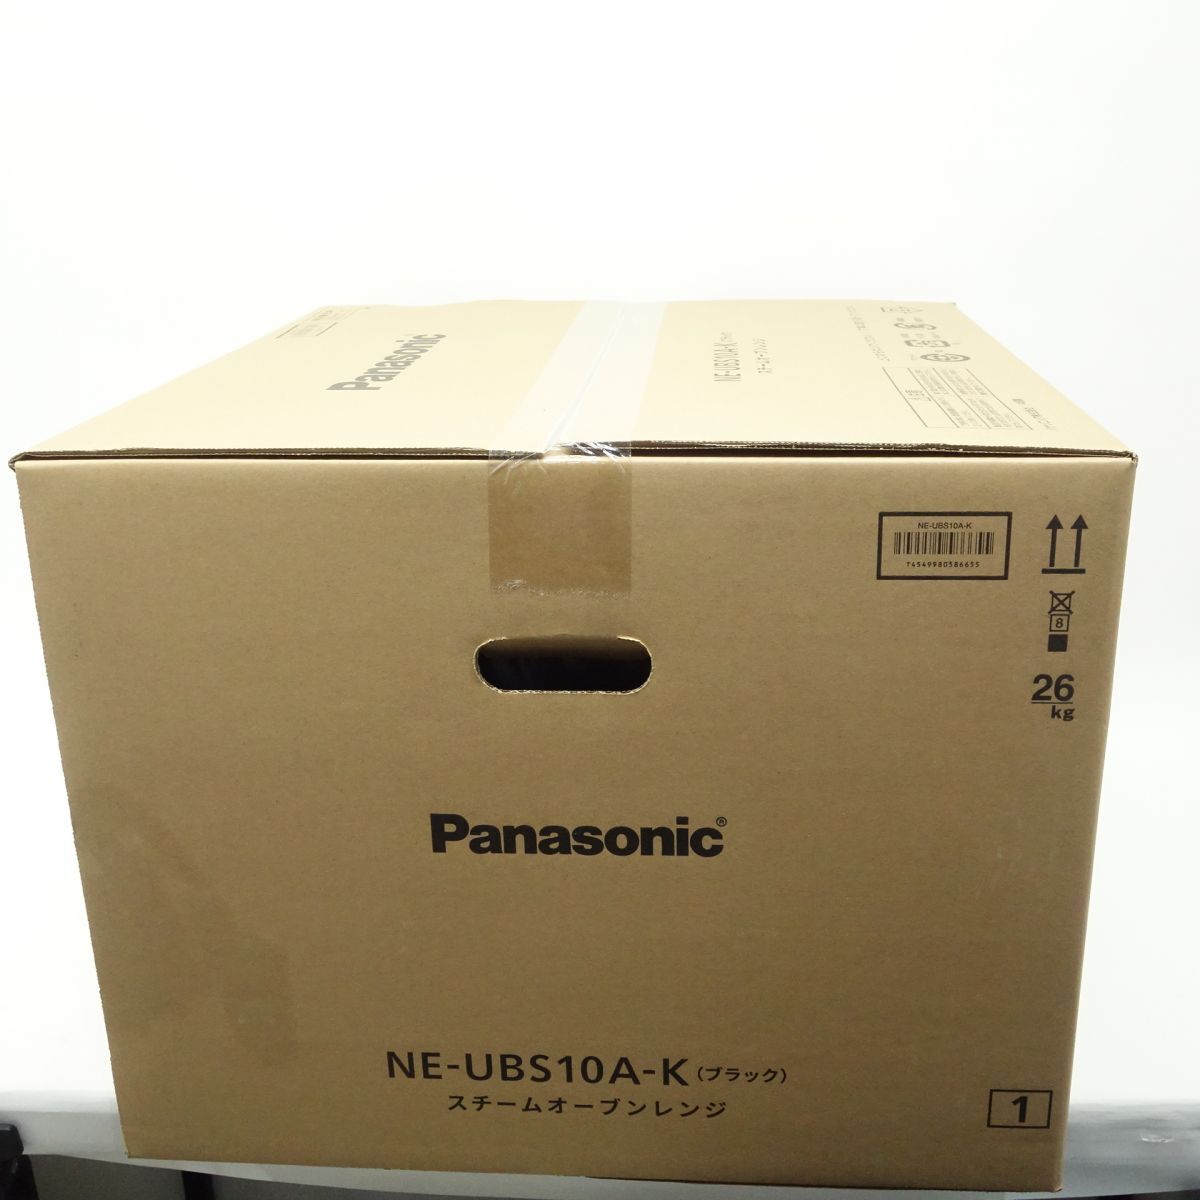 106【未開封】Panasonic/パナソニック スチームオーブンレンジ ビストロ NE-UBS10A-K ブラック 30L 電子レンジの画像2